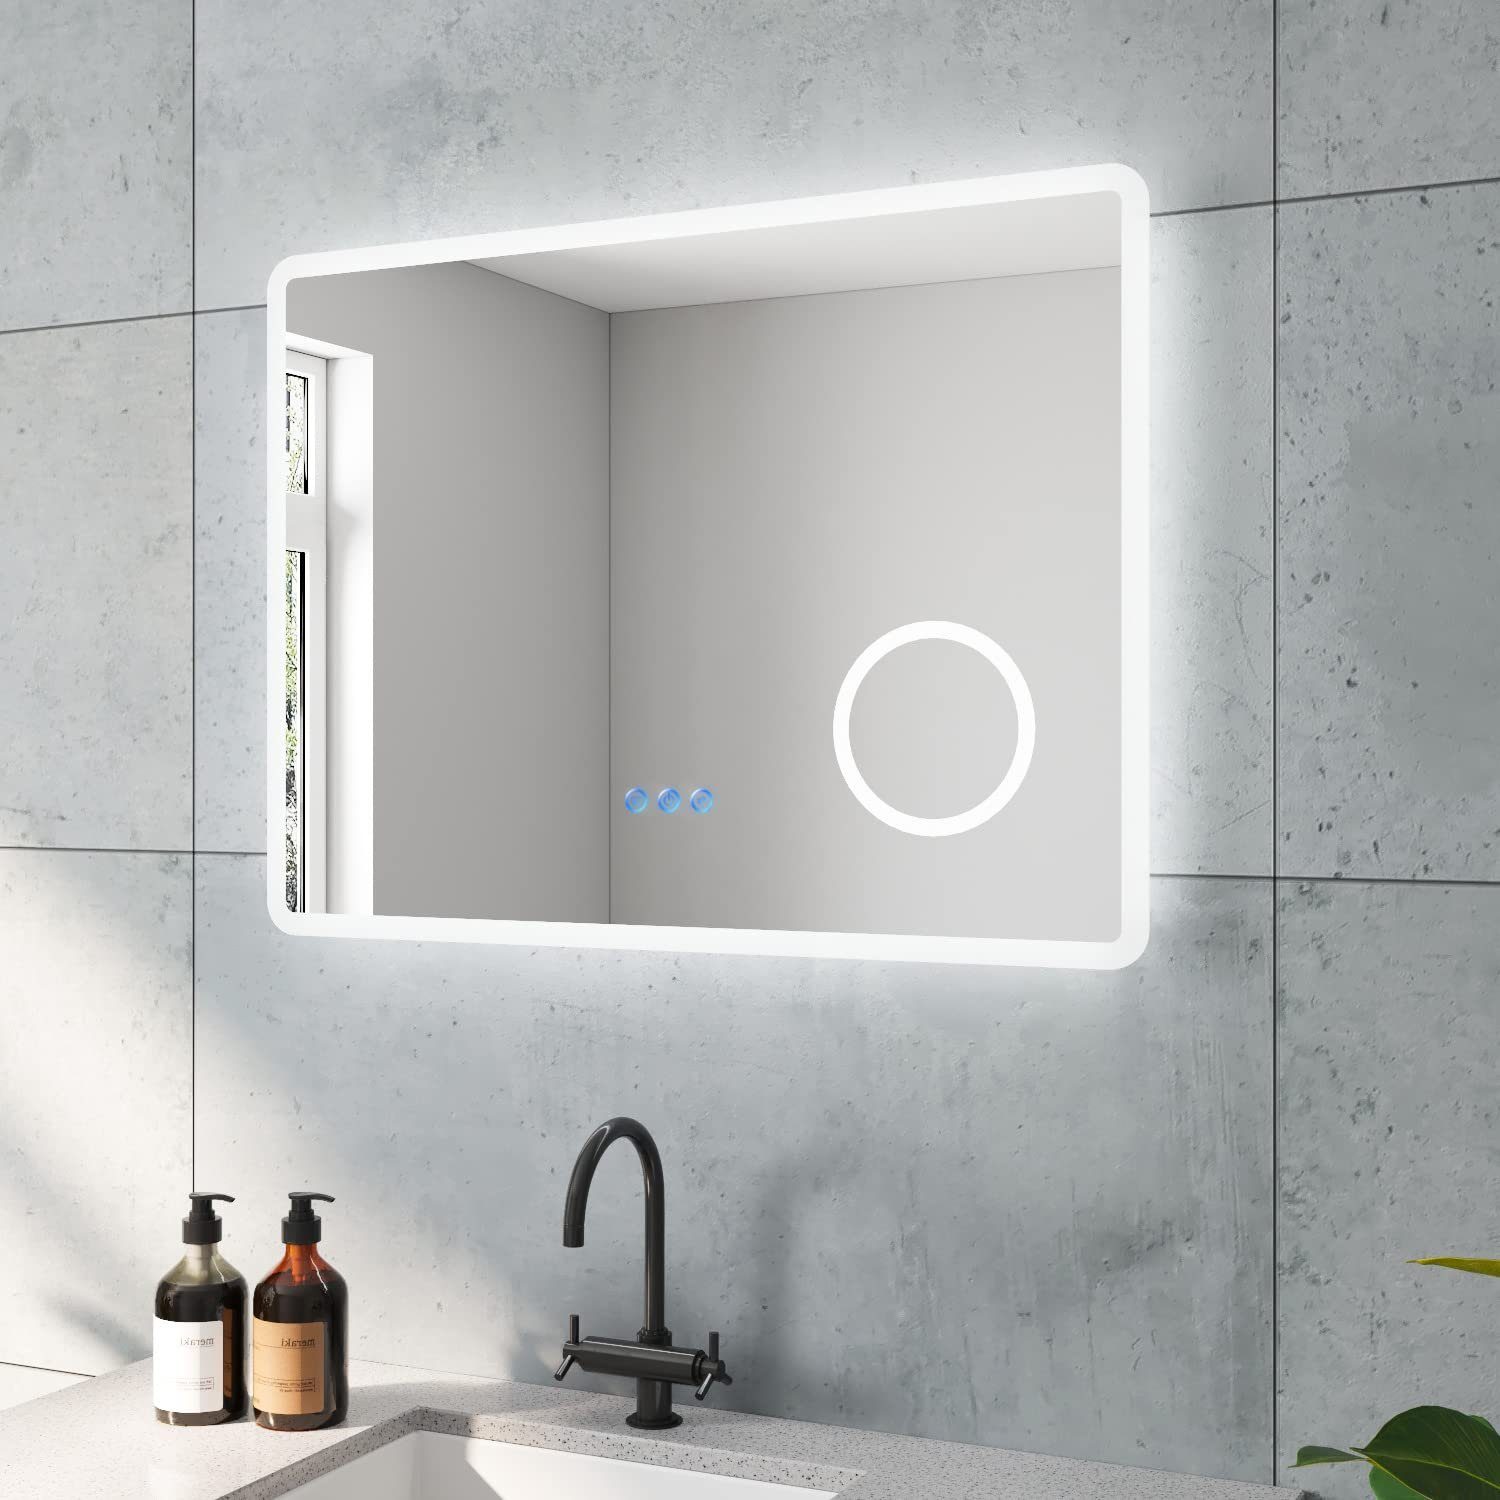 AQUABATOS LED-Lichtspiegel Badzimmerspiegel Badspiegel Led Beleuchtung, mit Beschlagfrei Spiegel Kosmetikspiegel Beleuchtet Abgerundete Ecken 80x60cm